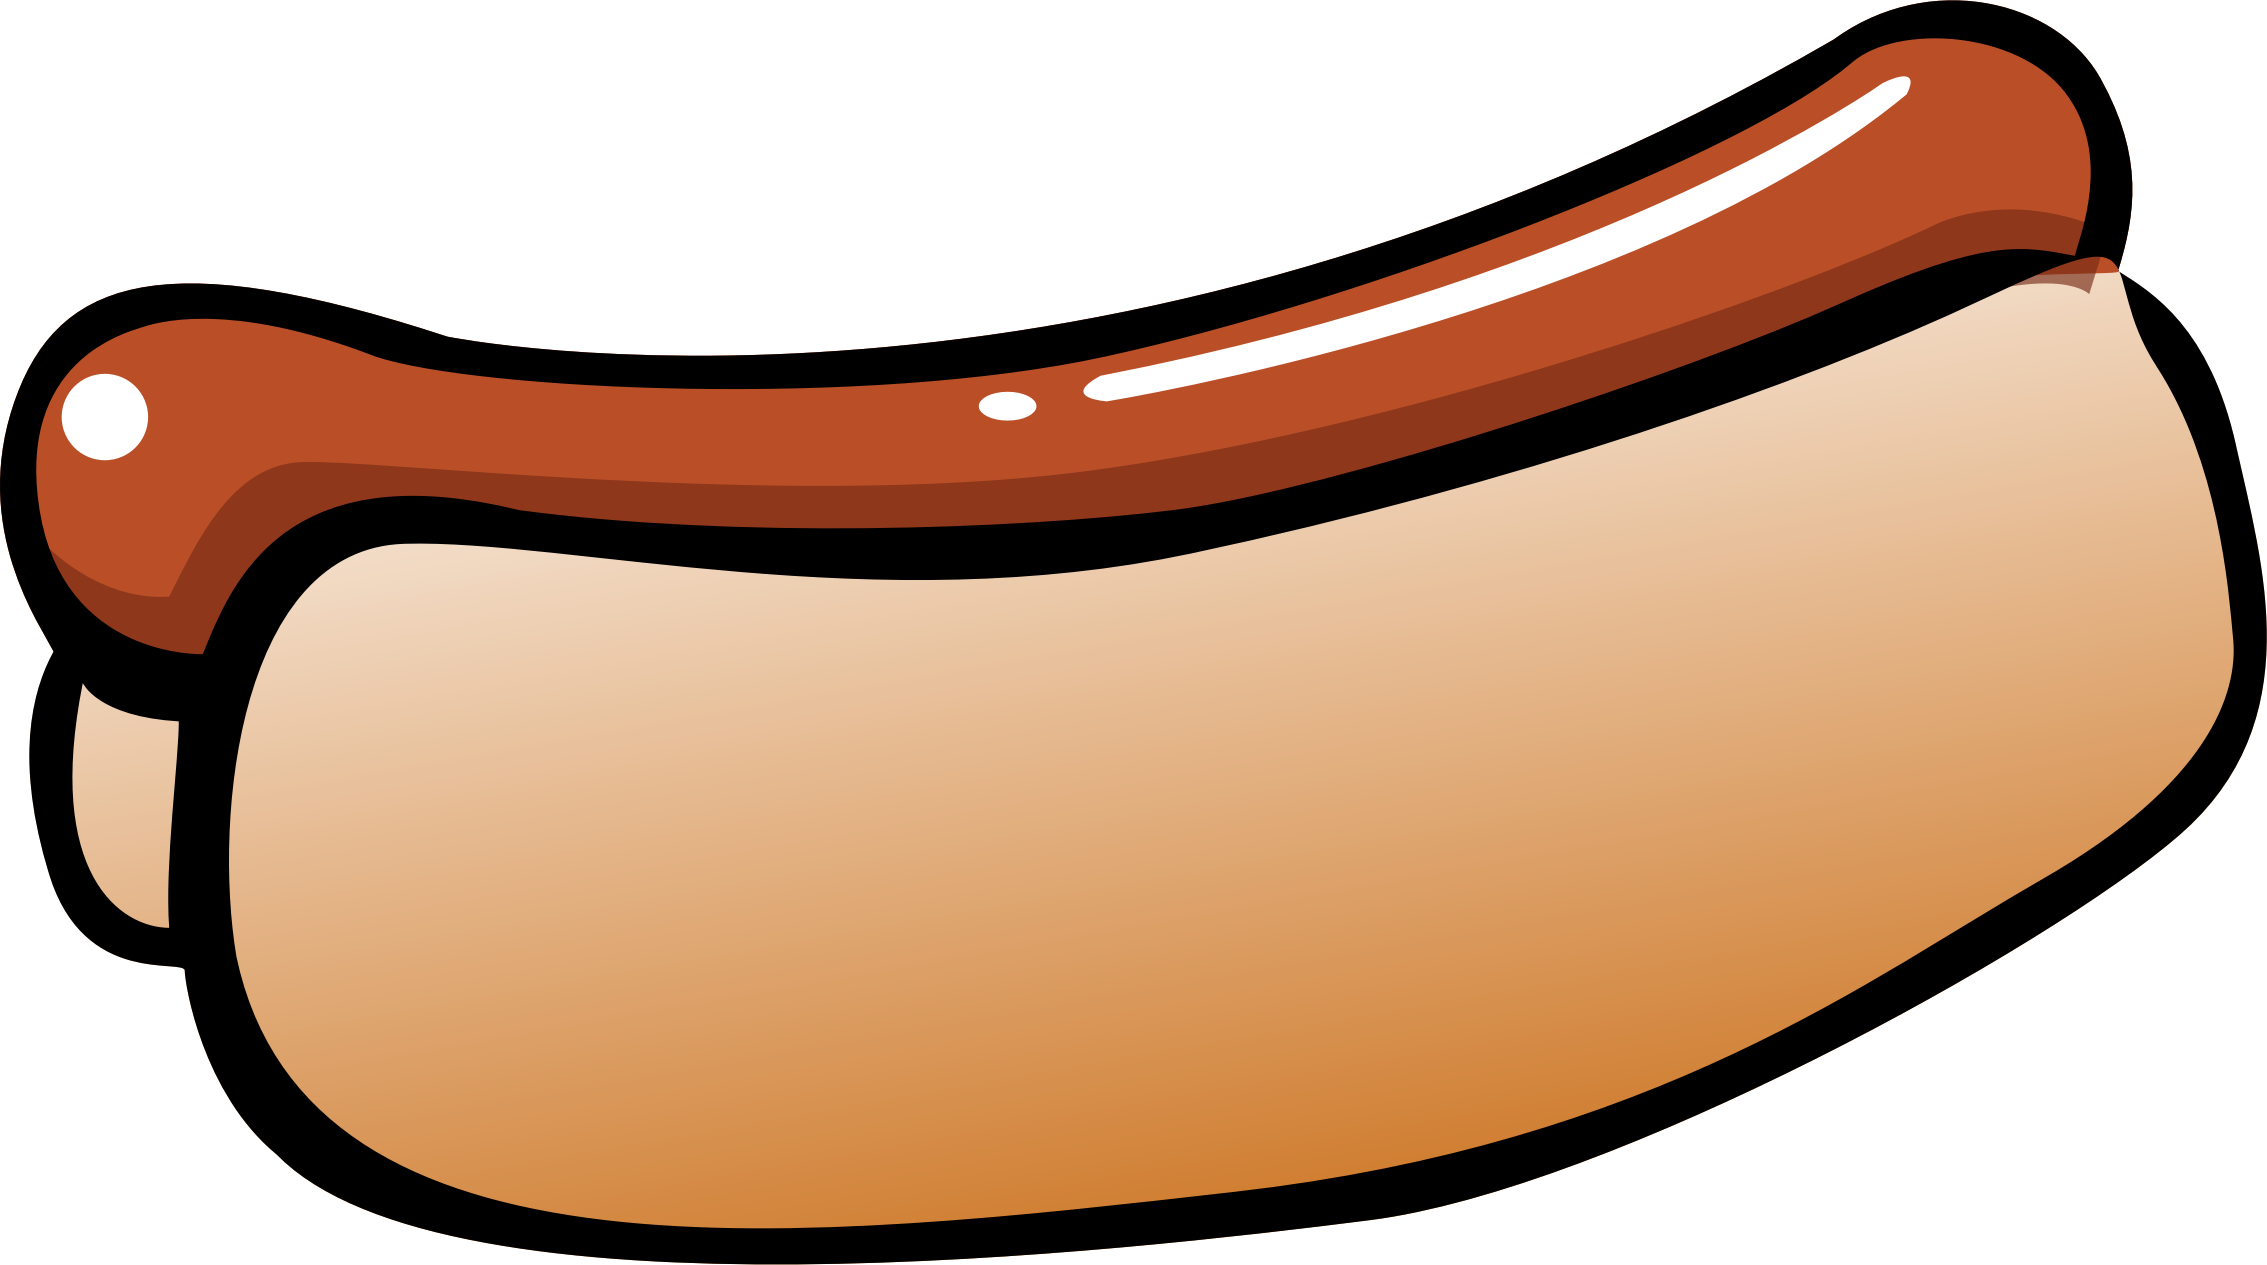 Big Image - Hot Dog Clip Art (2267x1265)